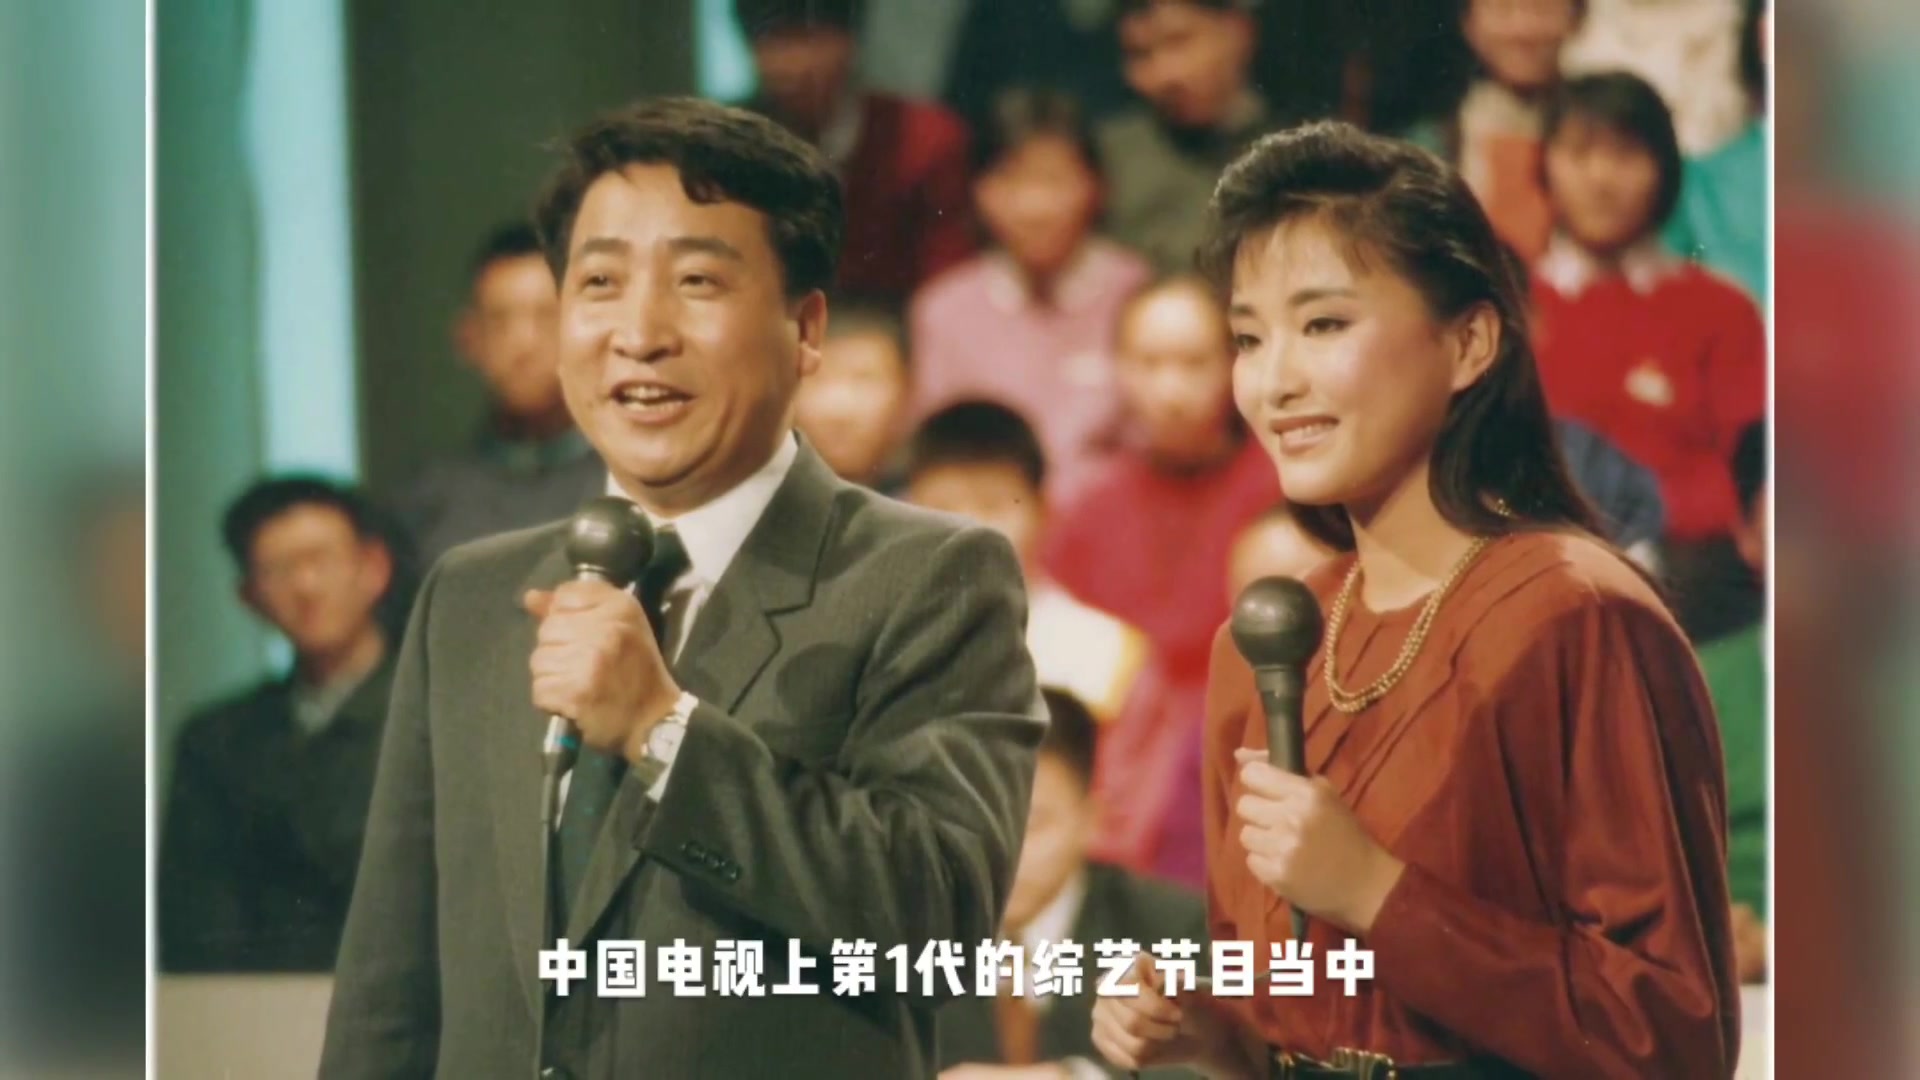 1991正大综艺第一期图片